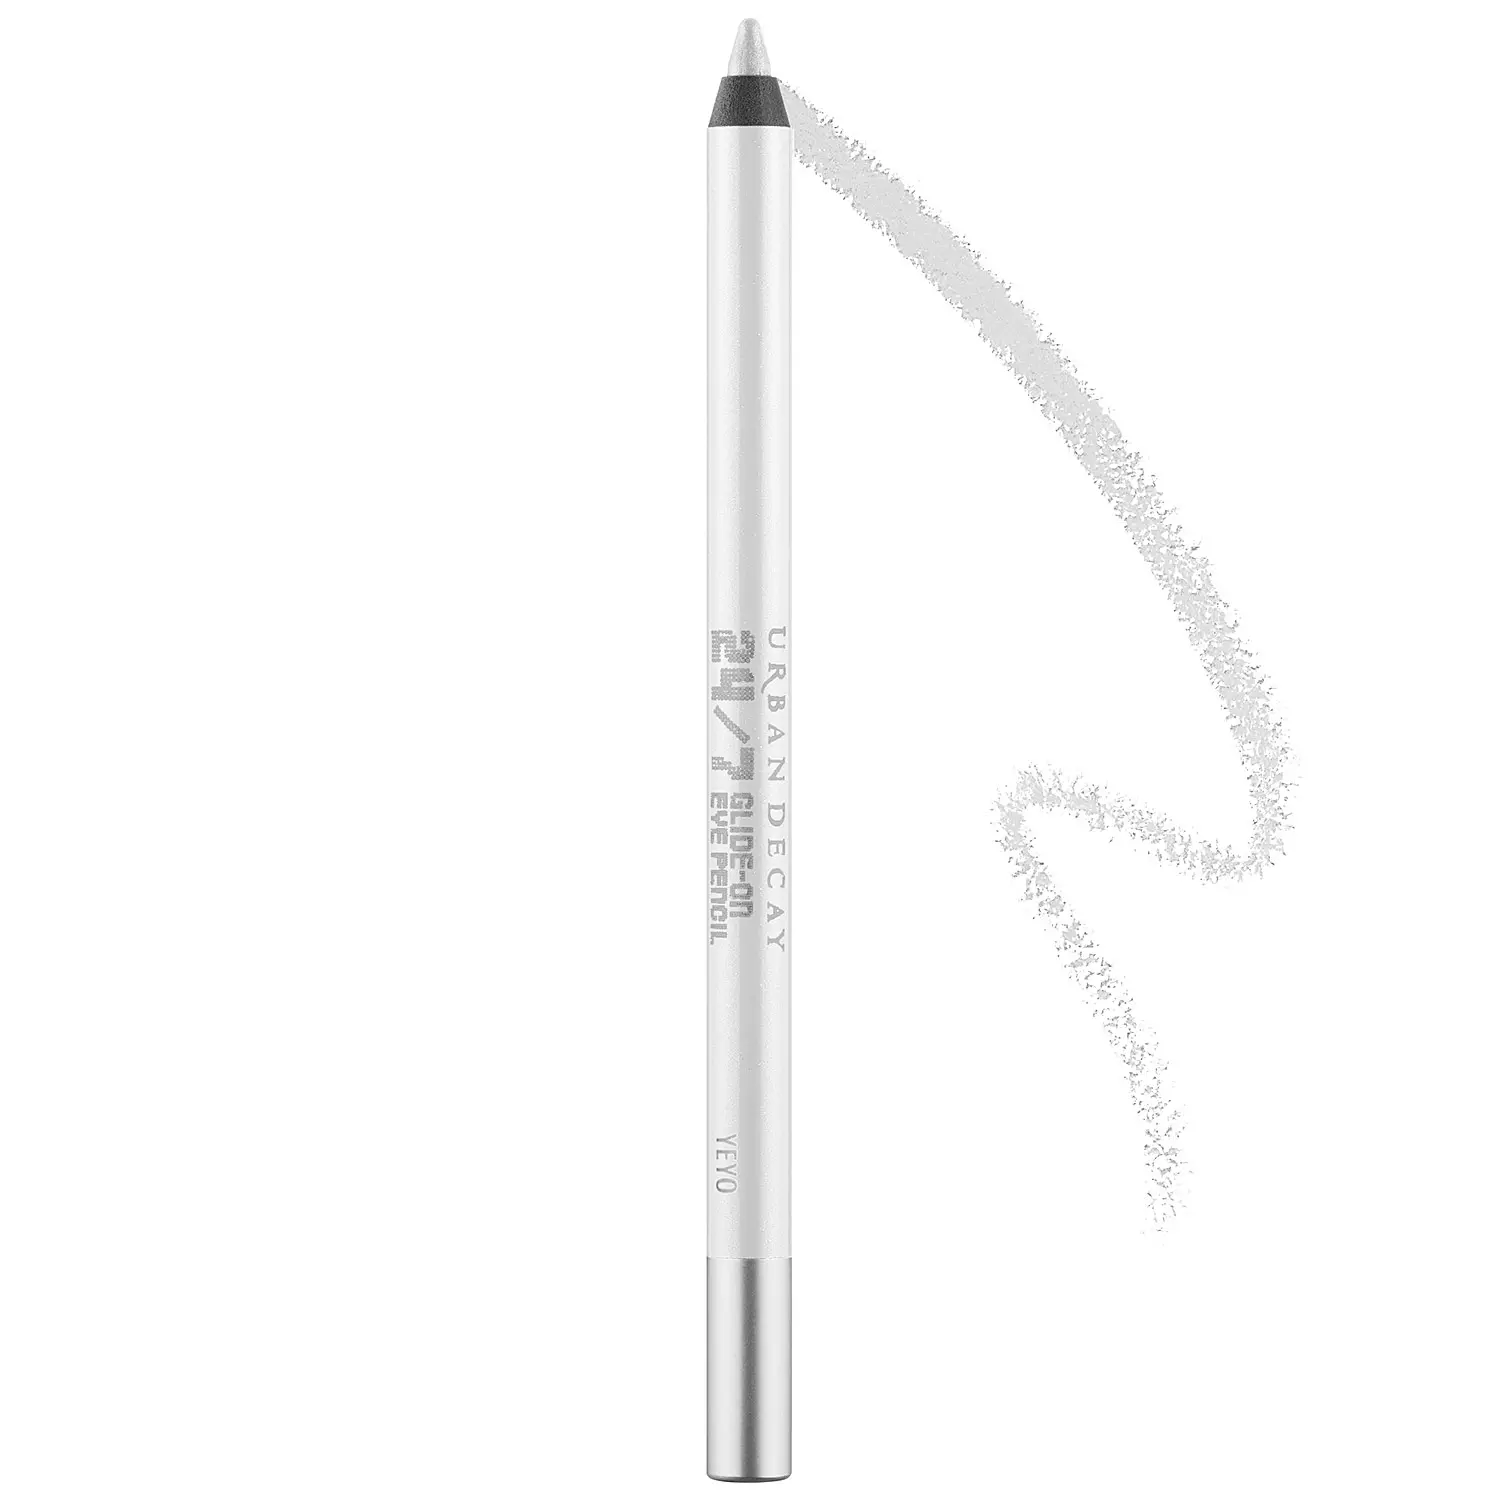 Urban Decay’s 24/7 Glide-On Waterproof Eyeliner Pencil